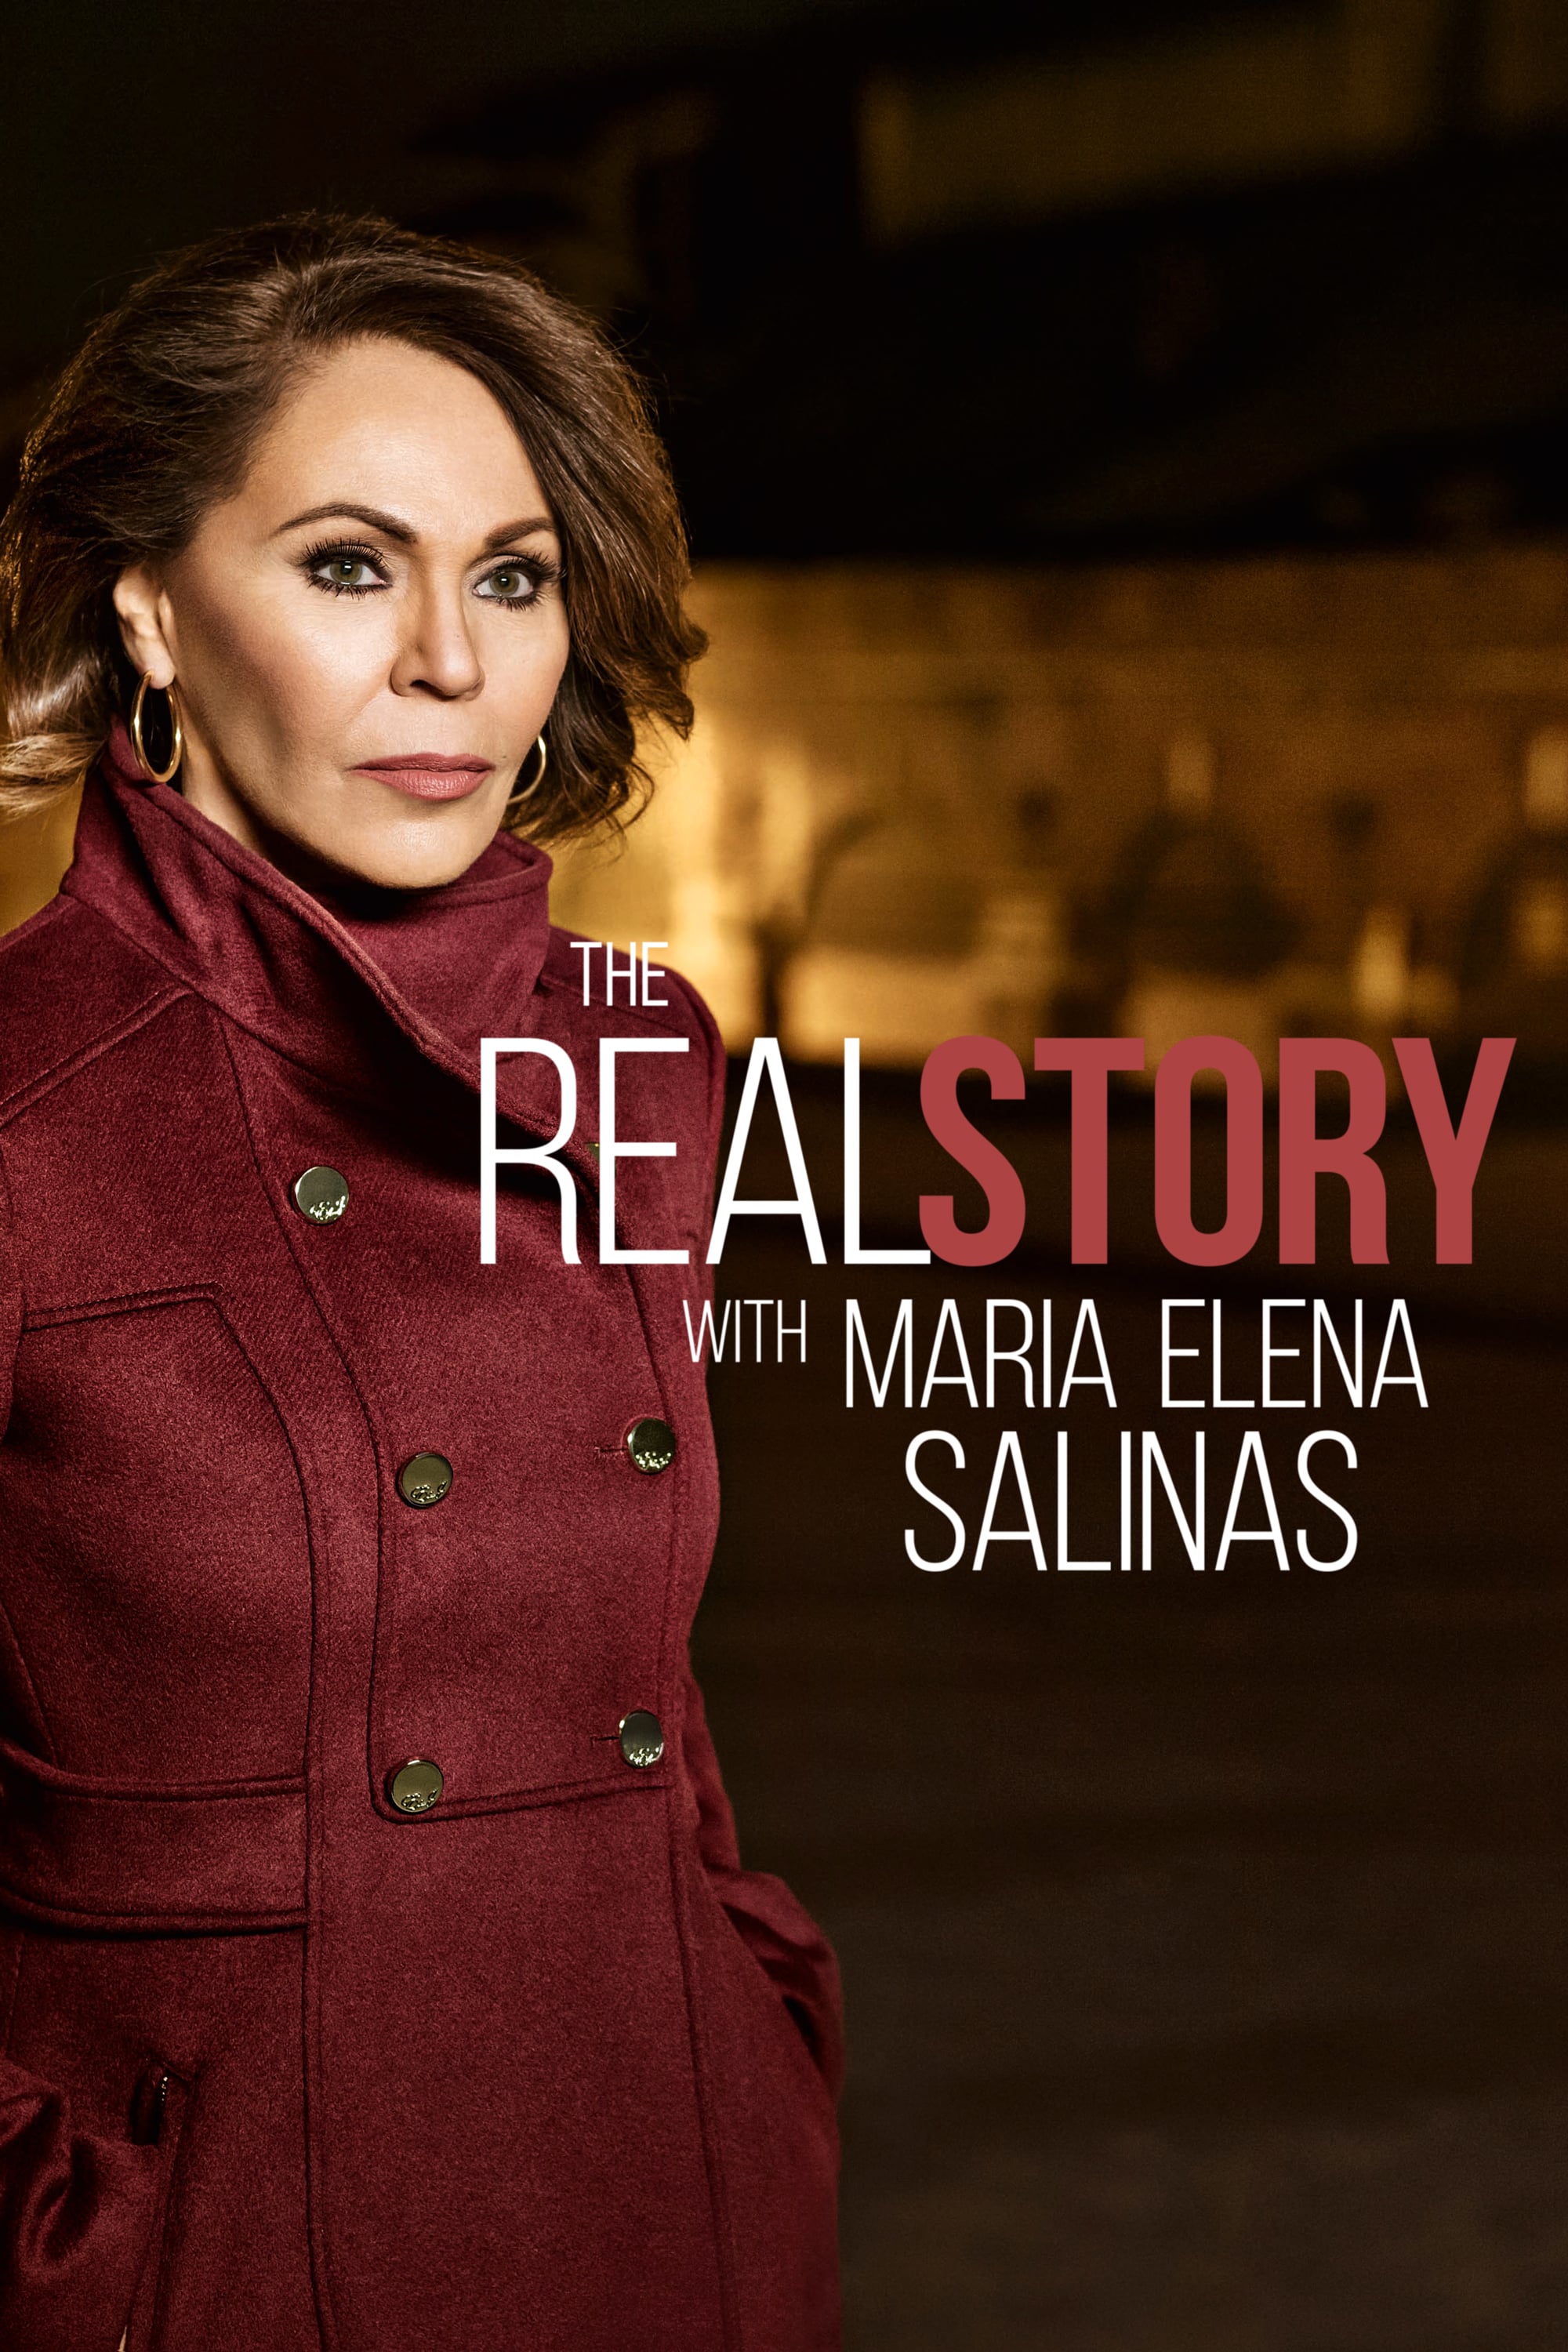 Caratula de The Real Story with Maria Elena Salinas (María Elena Salinas investiga) 